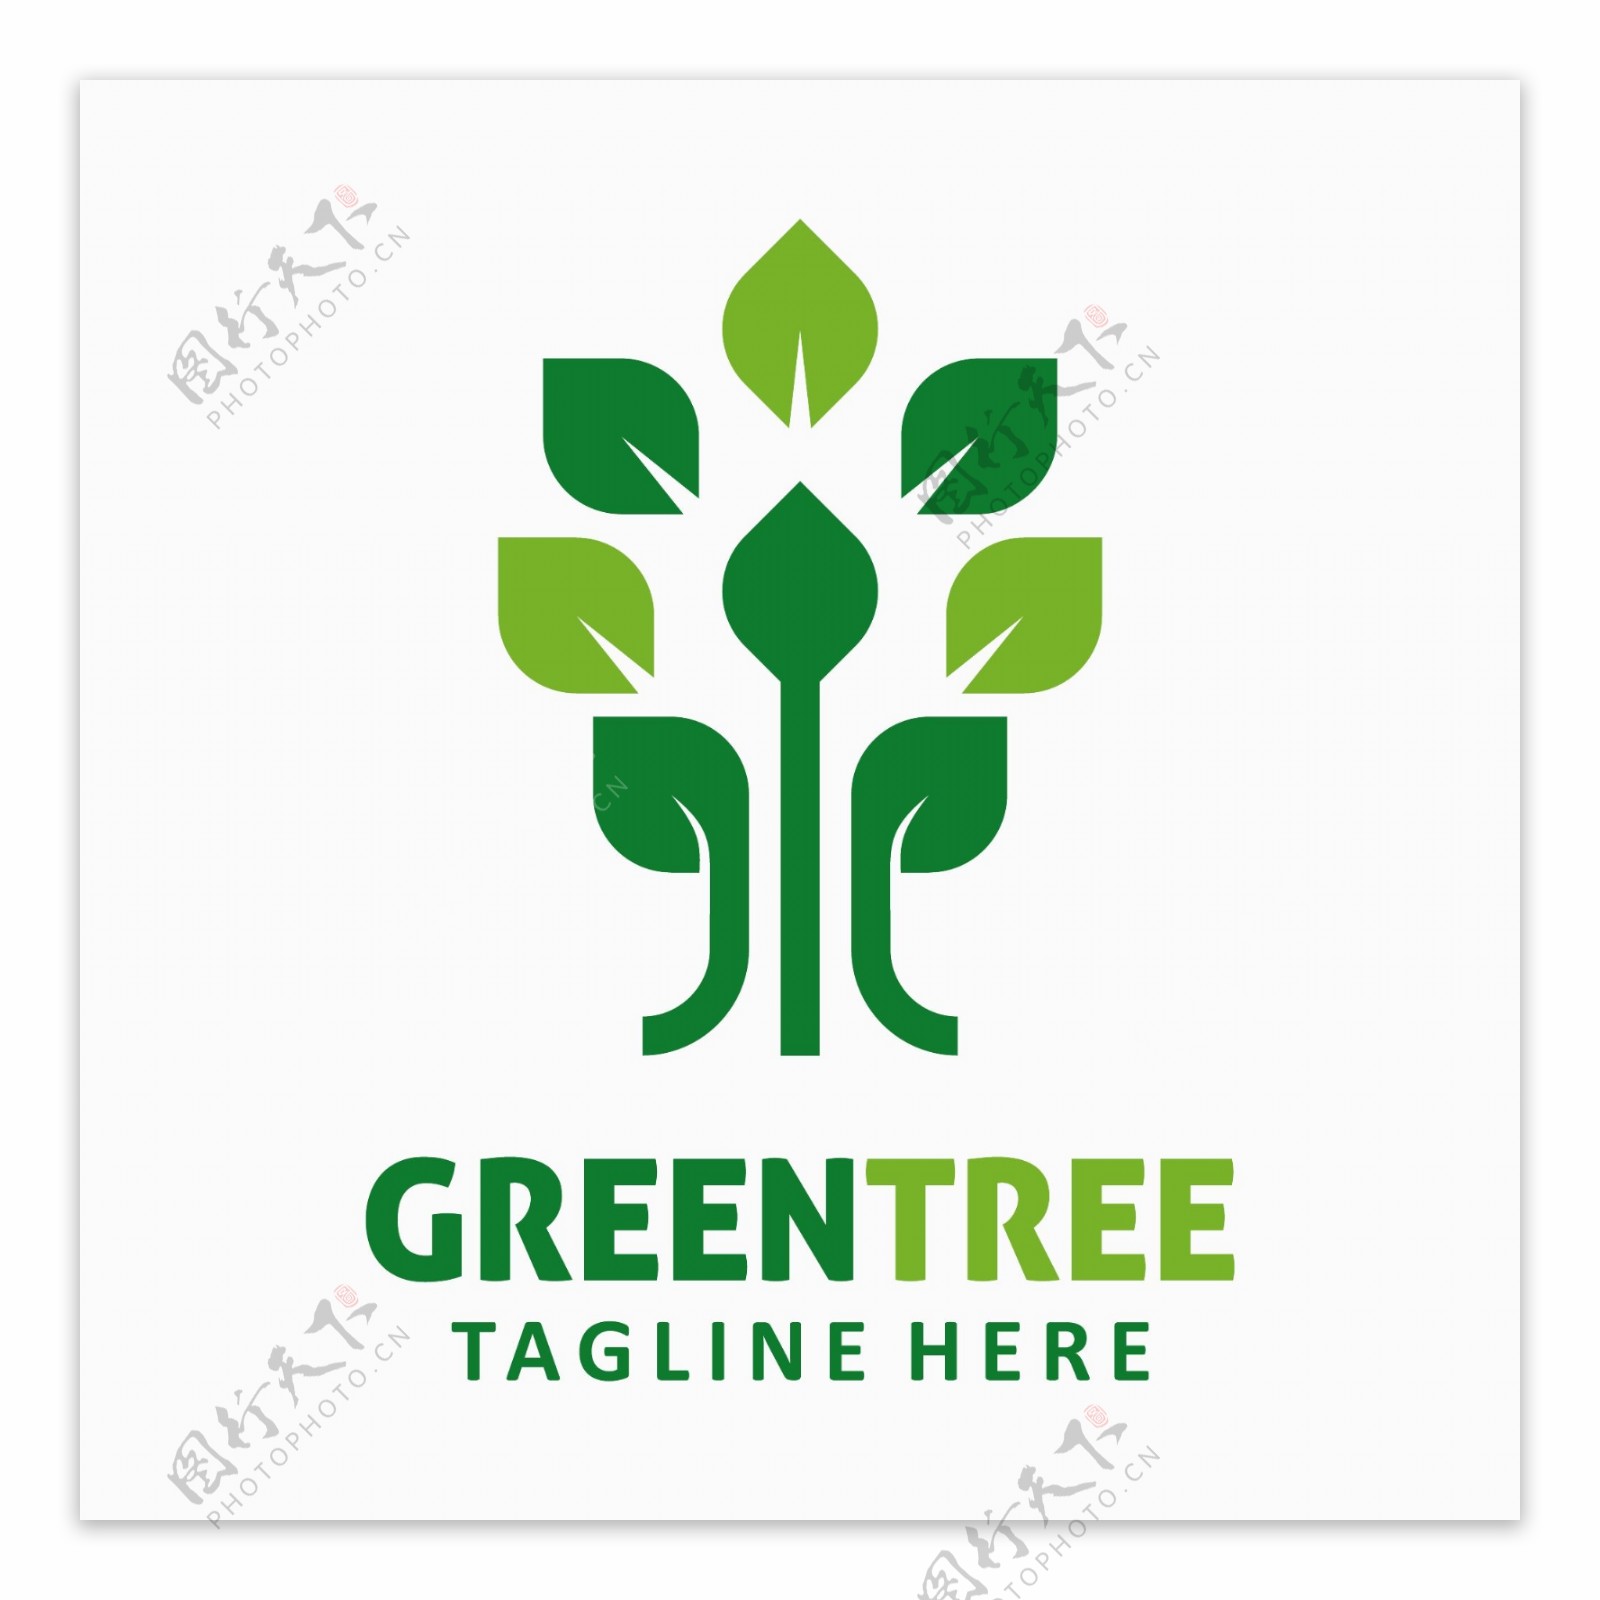 绿叶树木元素标志